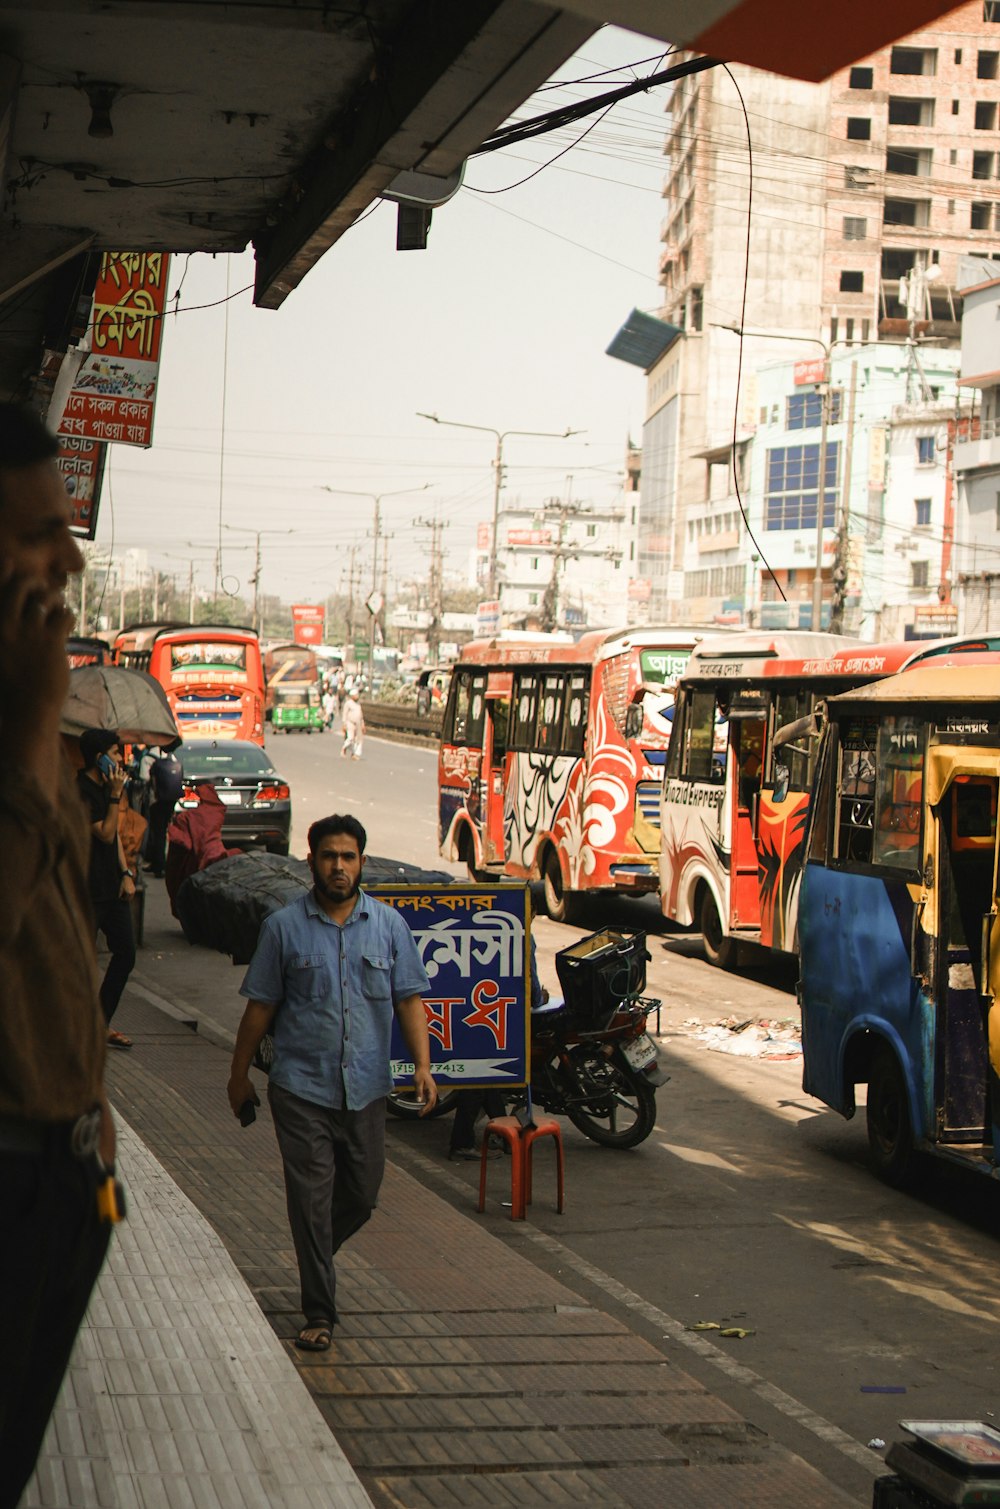 Un hombre caminando por una calle junto a autobuses estacionados